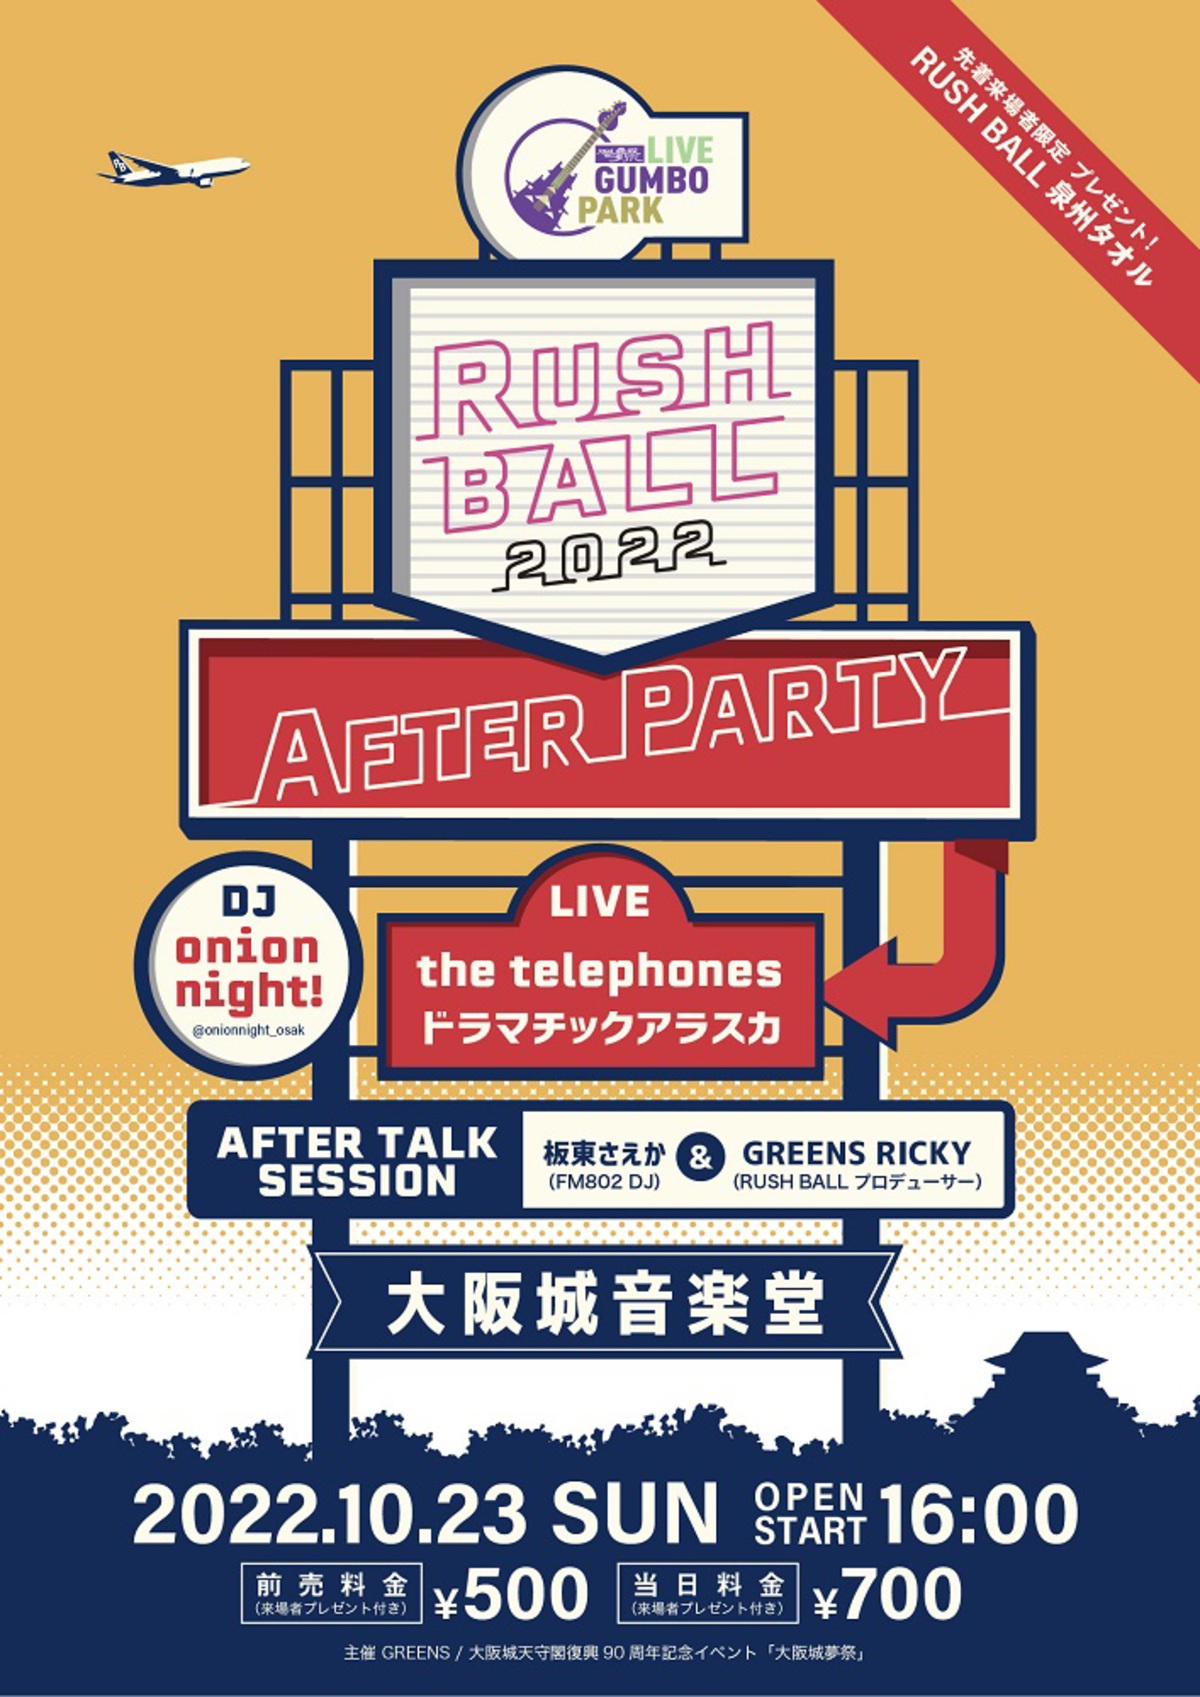 ラシュボの余韻を楽しむイベント Rush Ball 22 After Party 大阪城音楽堂にて10 23開催決定 The Telephones ドラマチックアラスカがスペシャル ライヴ